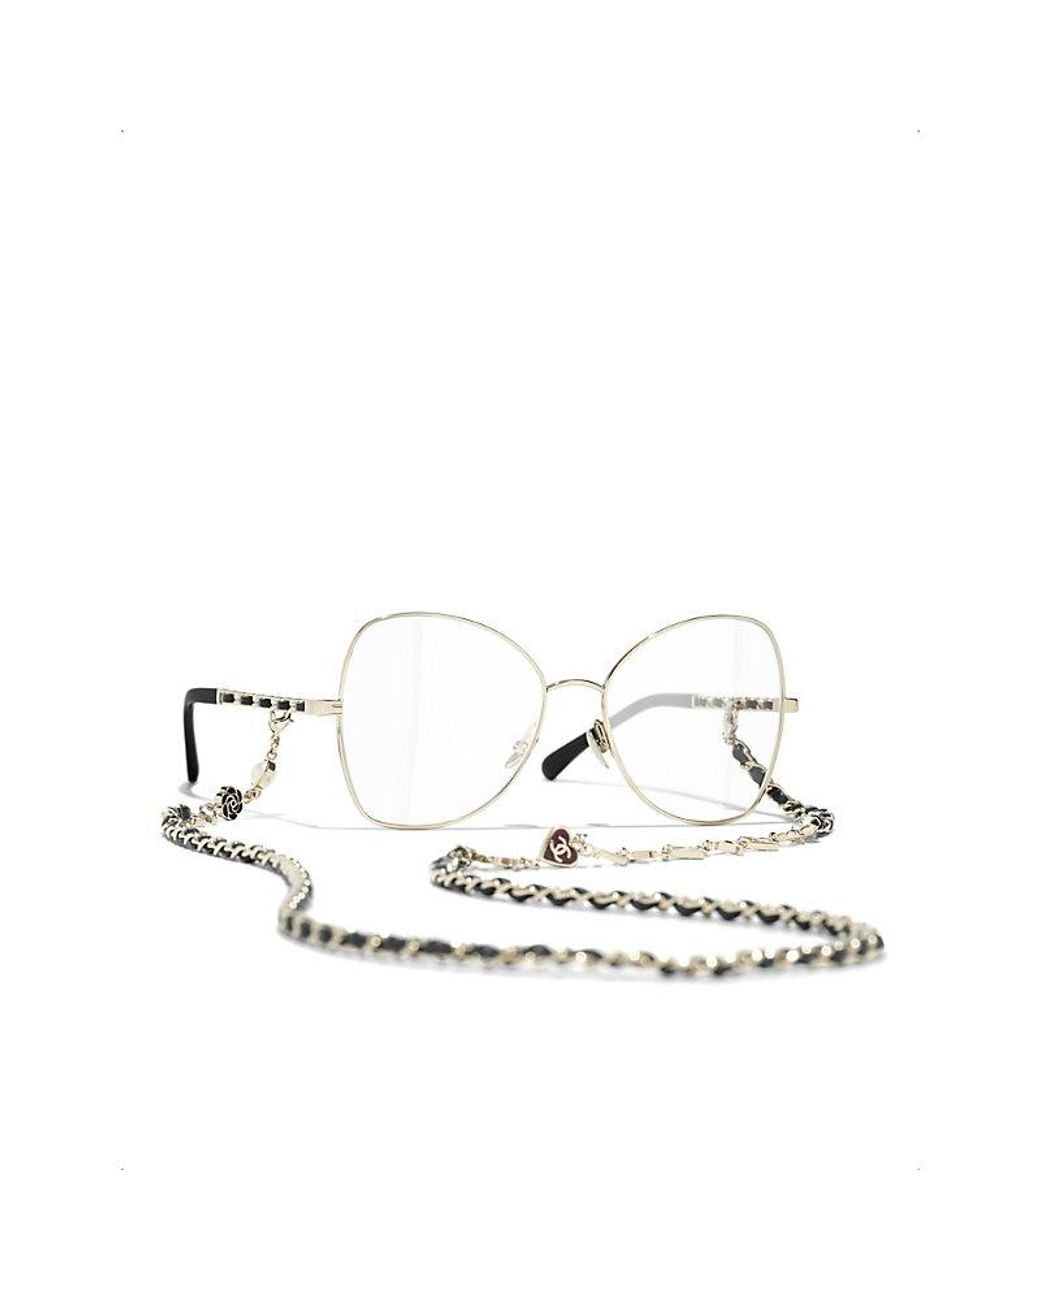 chanel butterfly eyeglasses for women